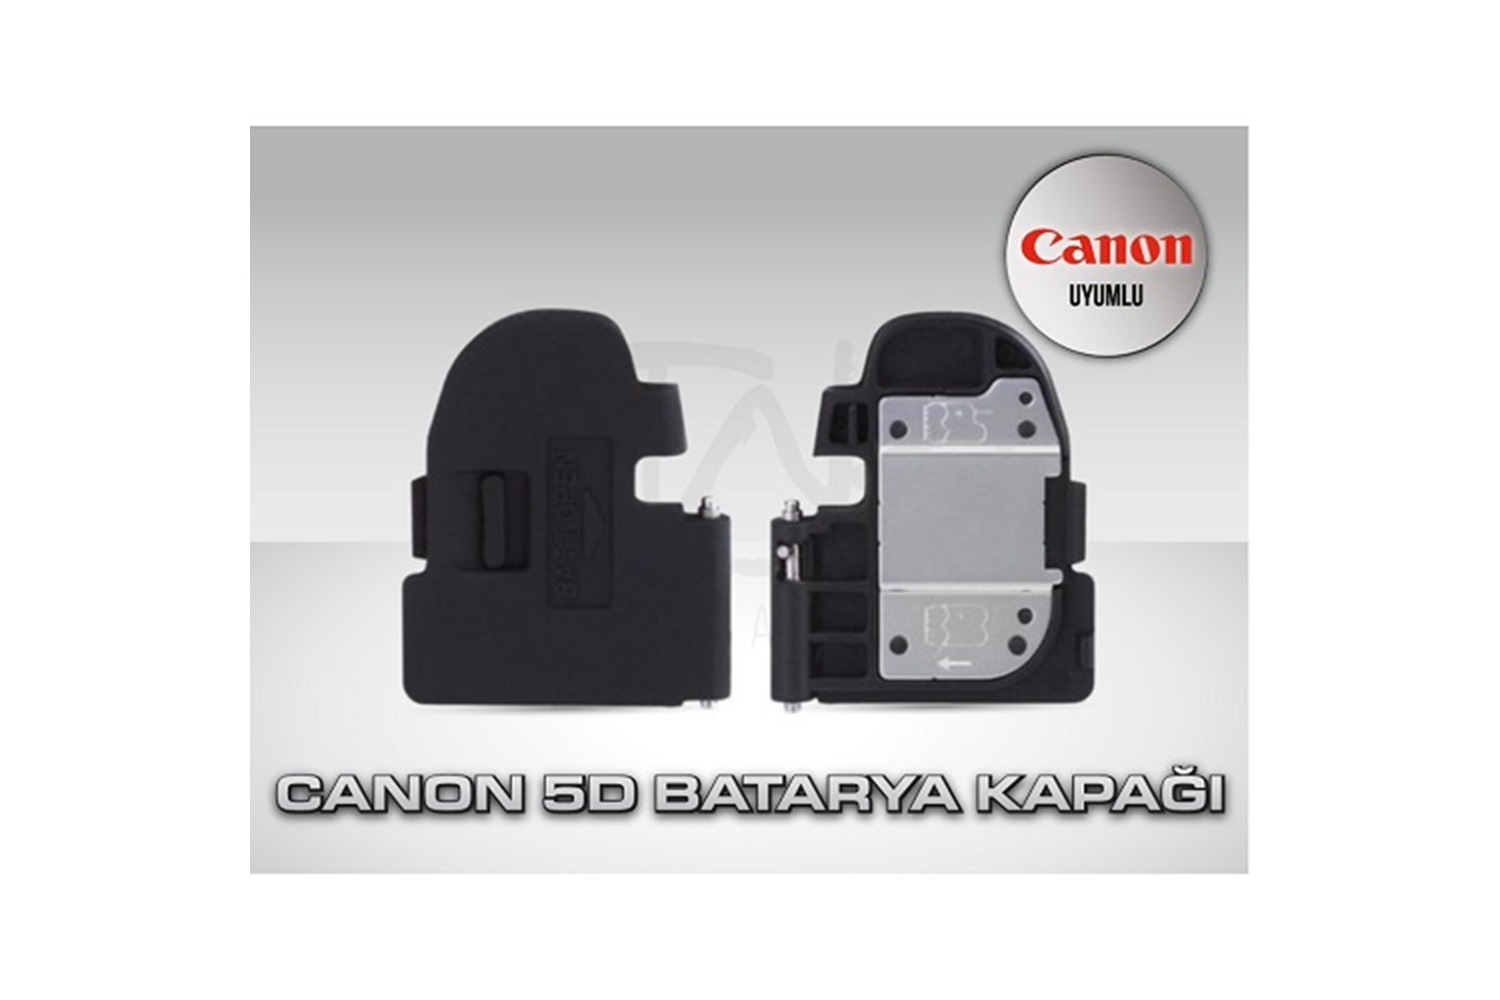 Tewise Canon 5D Uyumlu Batarya Kapak Pil Kapağı